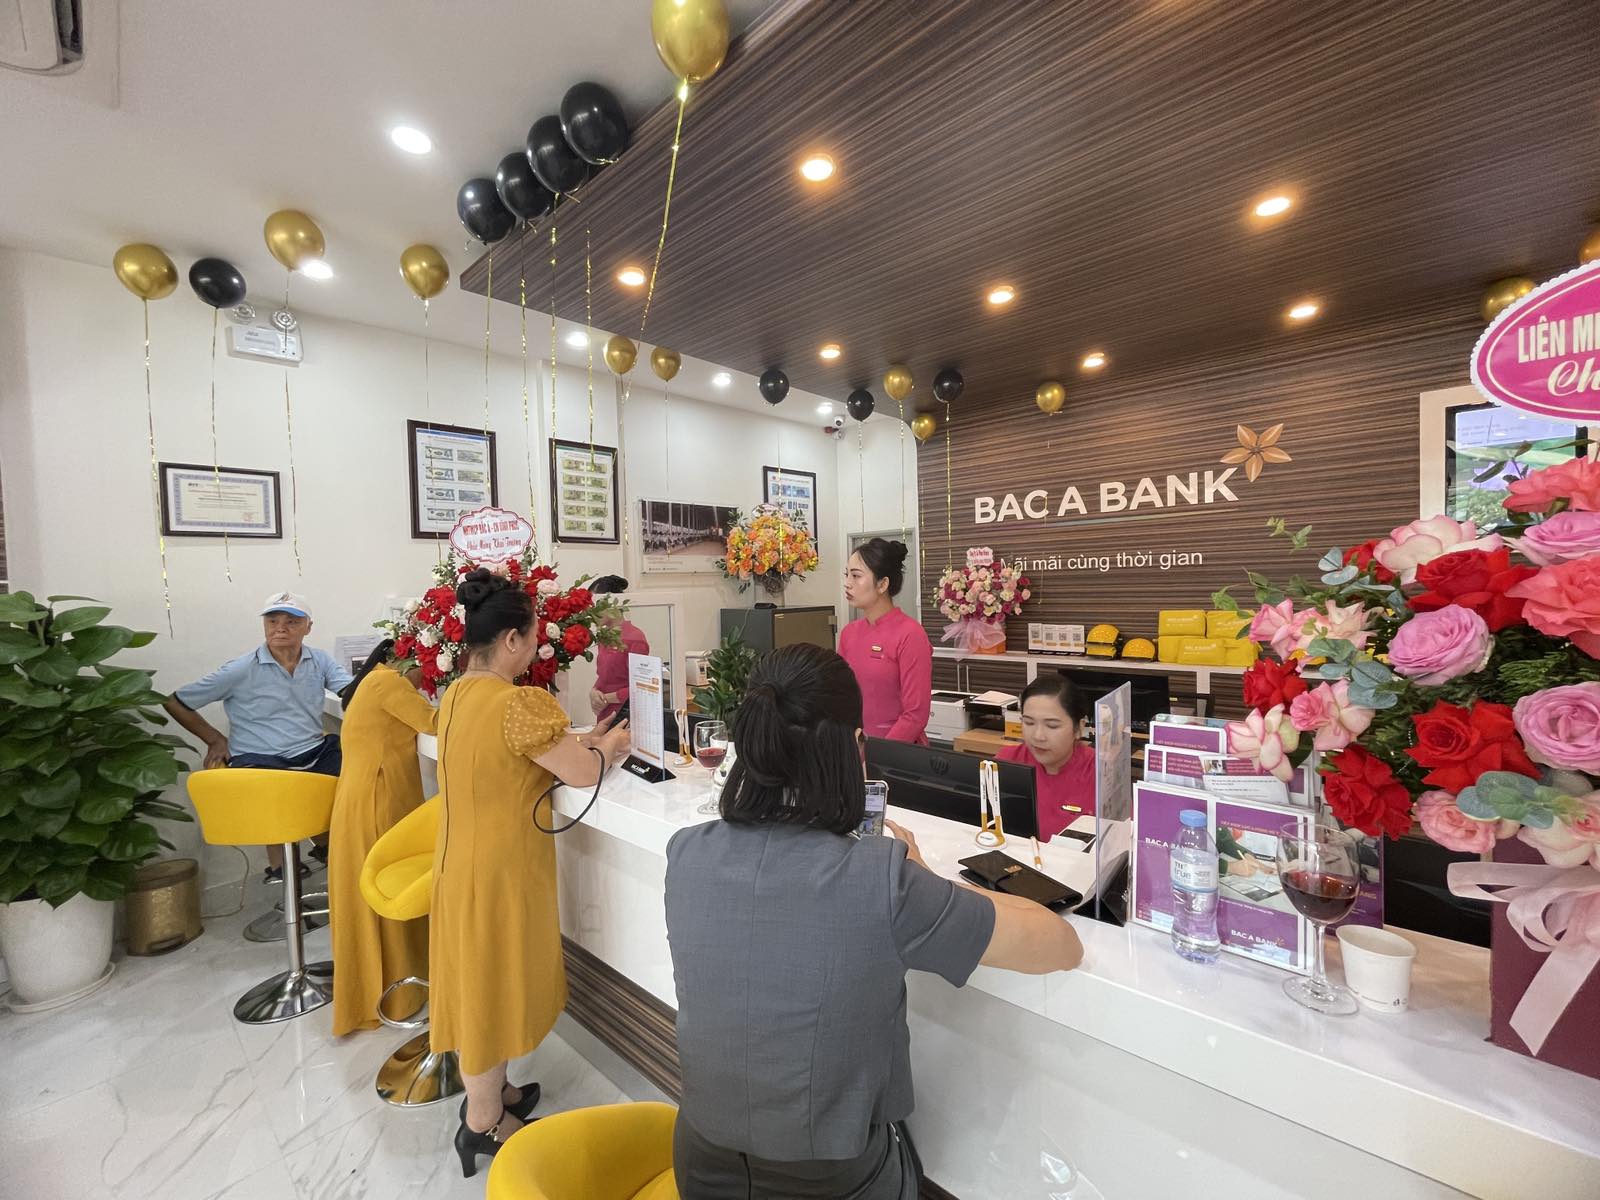 BAC A BANK khai trương chi nhánh mới mở rộng mạng lưới đến vùng Tây Bắc - Ảnh 3.